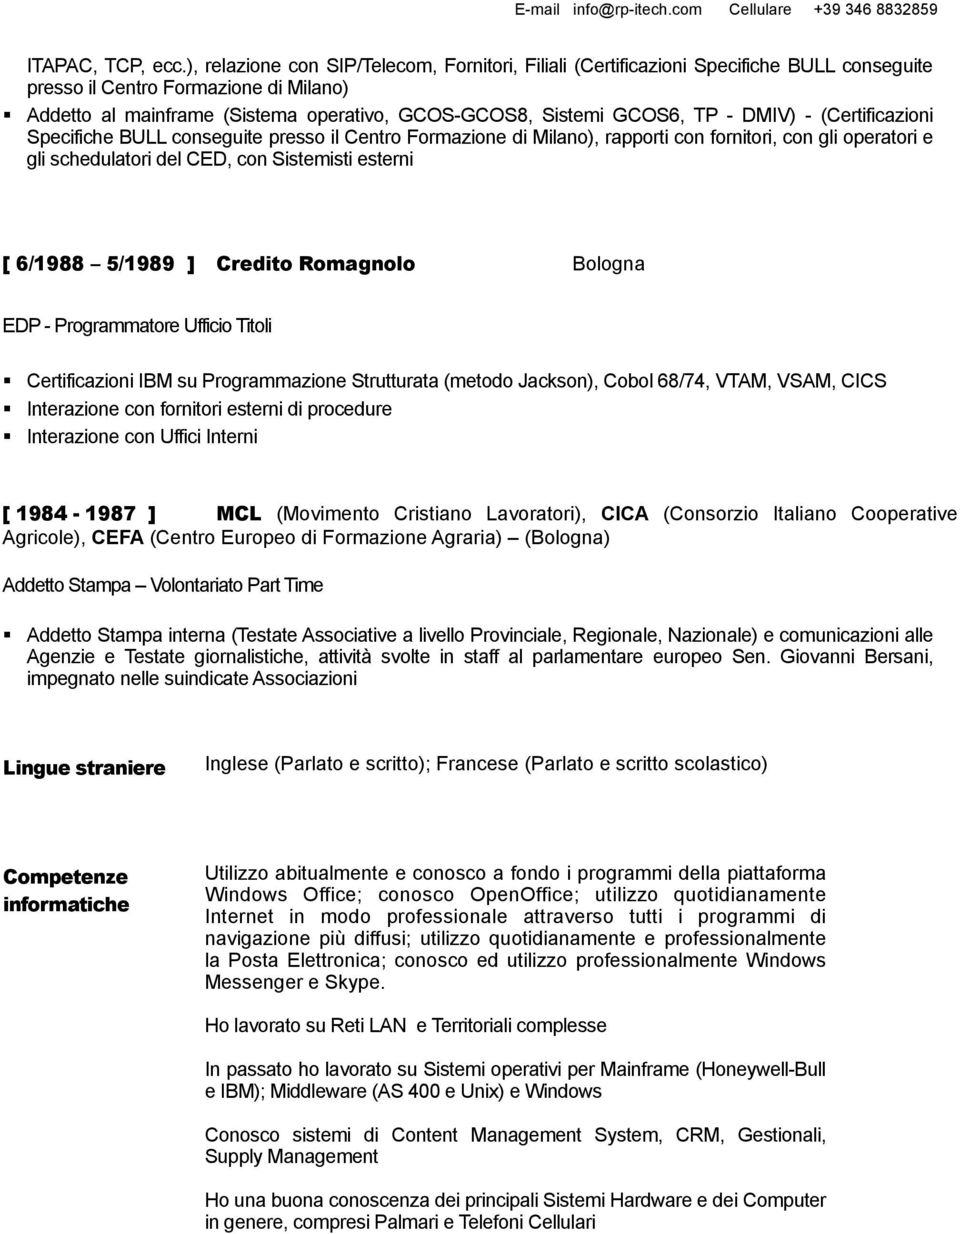 TP - DMIV) - (Certificazioni Specifiche BULL conseguite presso il Centro Formazione di Milano), rapporti con fornitori, con gli operatori e gli schedulatori del CED, con Sistemisti esterni [ 6/1988